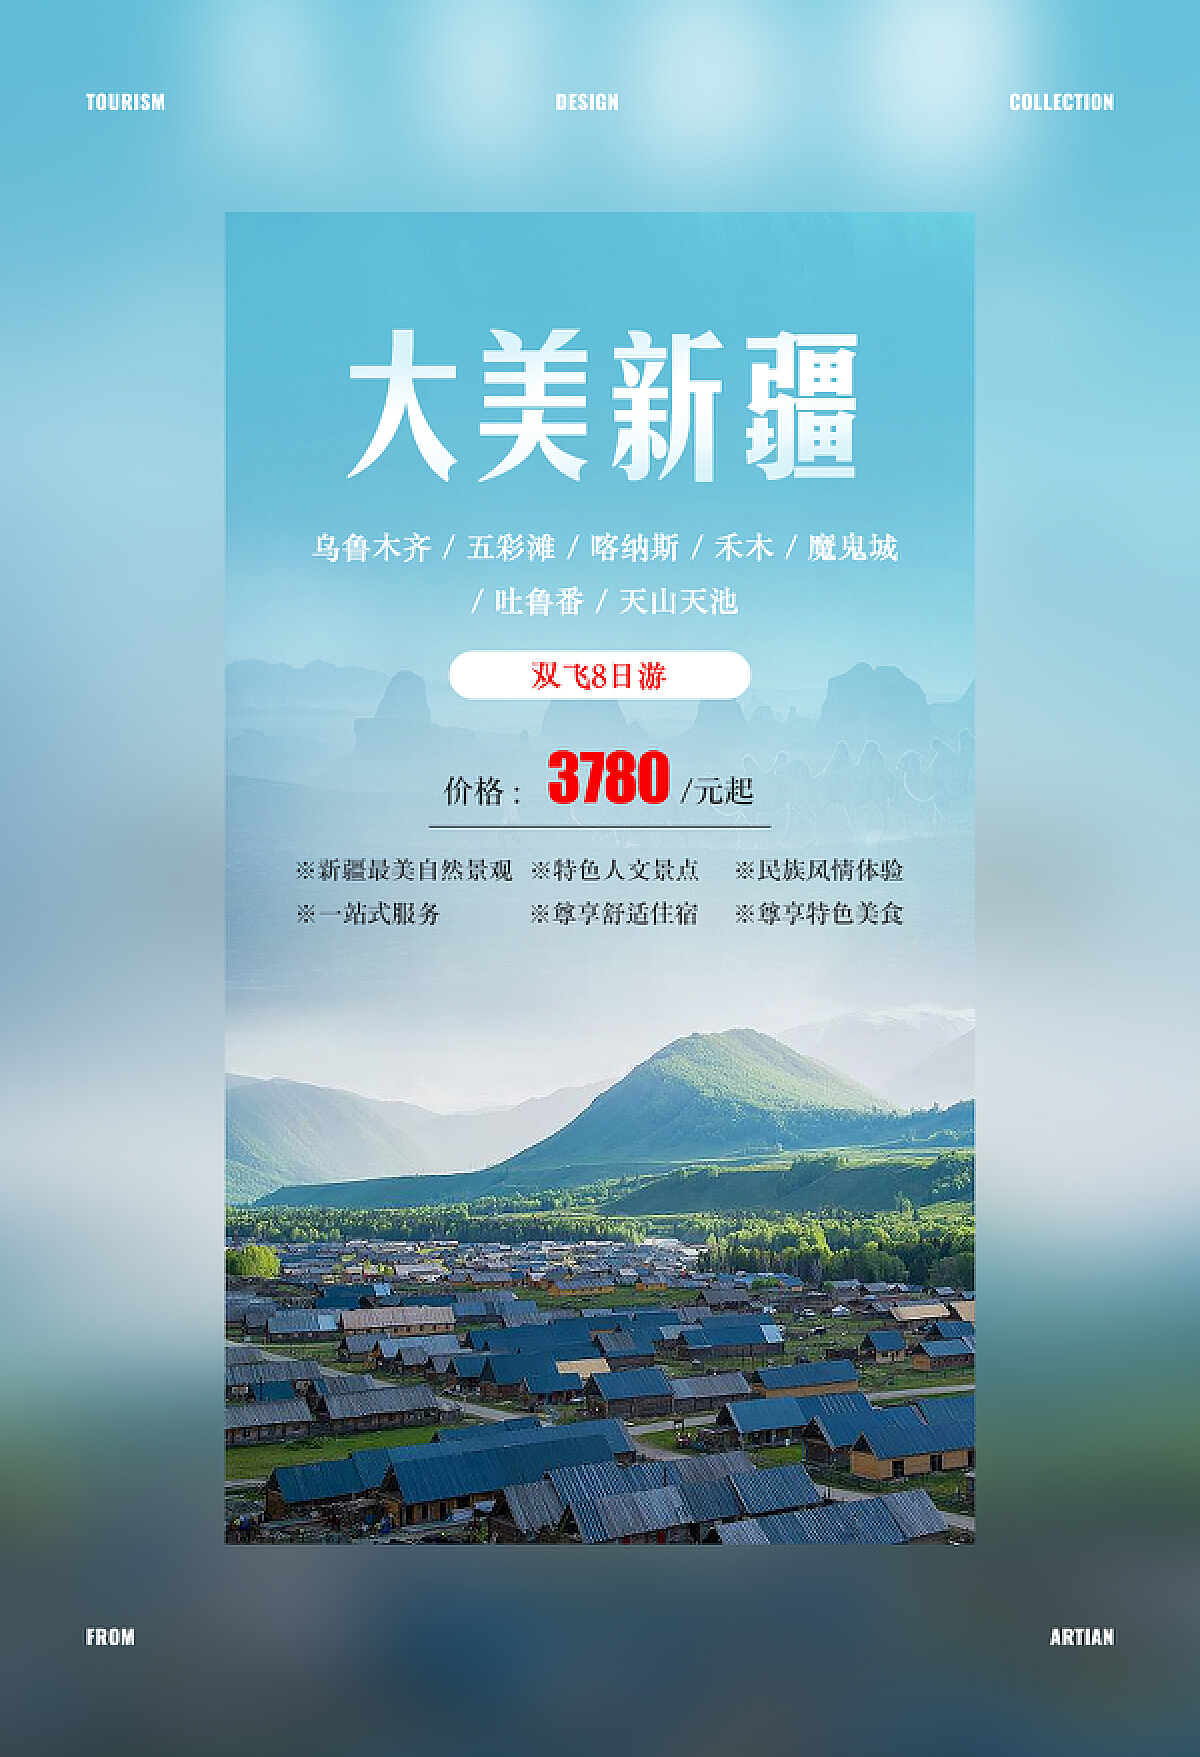 2021年中国在线旅游平台用户洞察研究报告